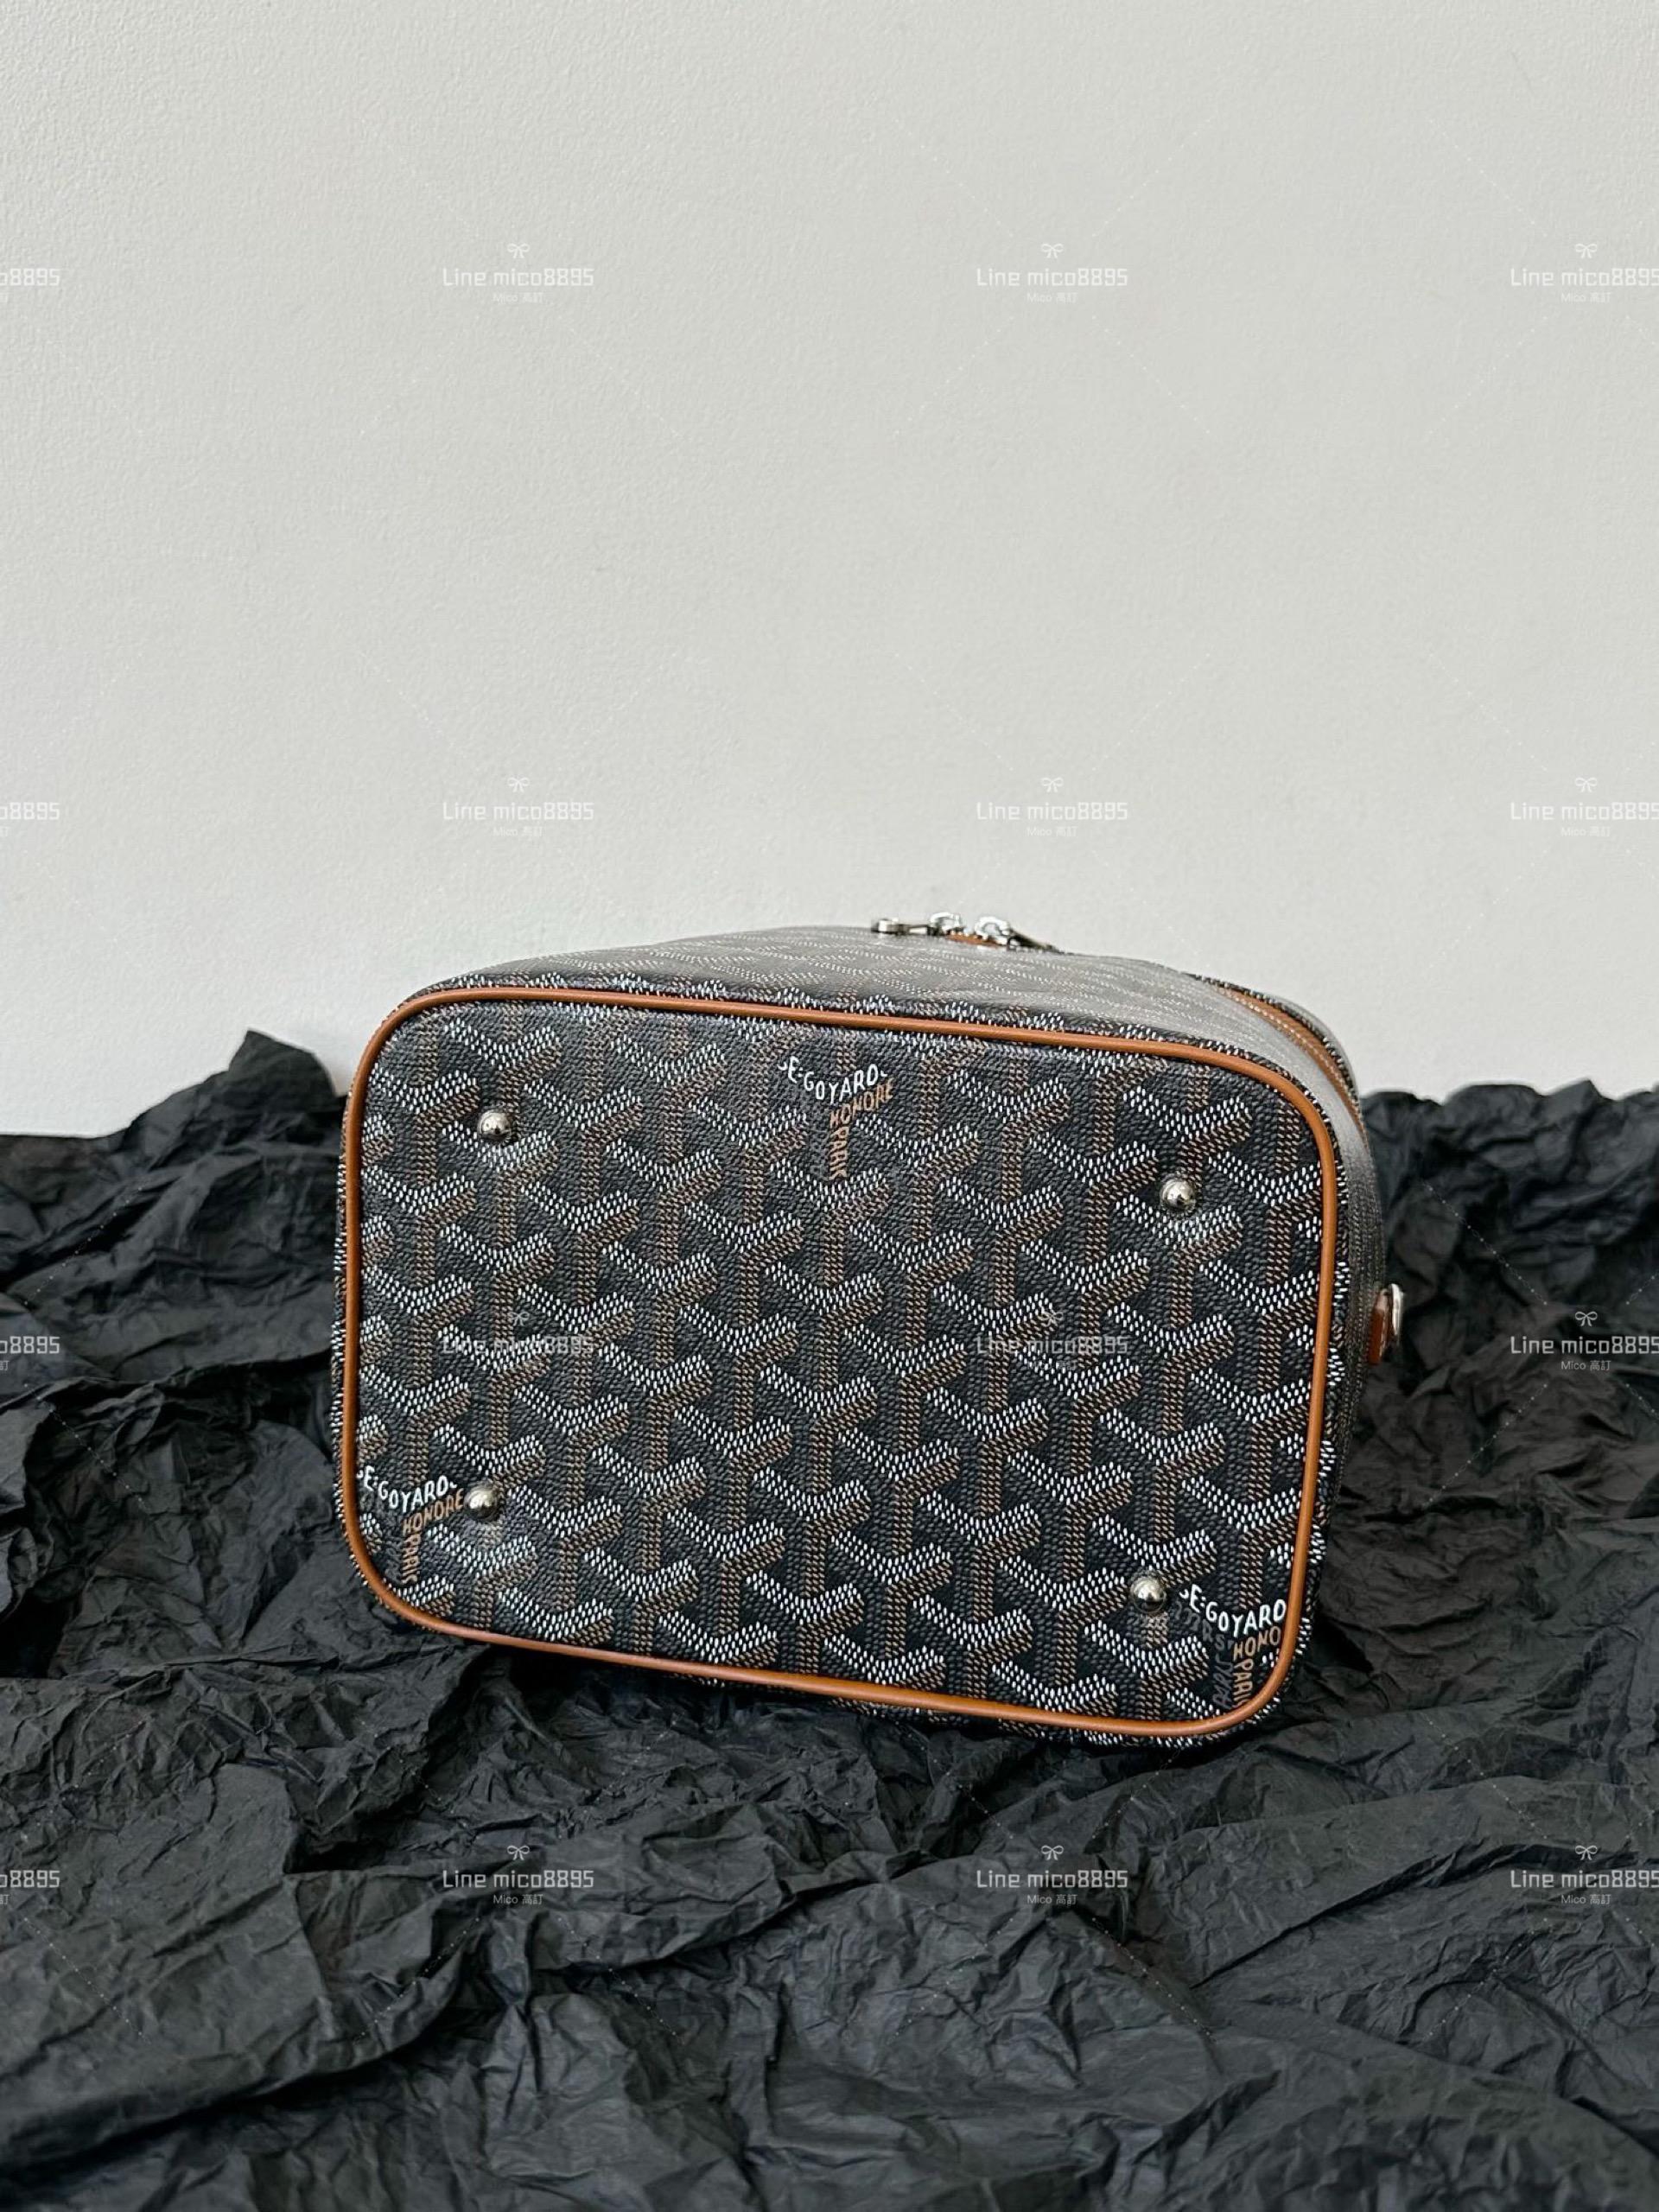 Goyard 化妝盒子包/化妝包(配肩帶) 黑棕色 20cm